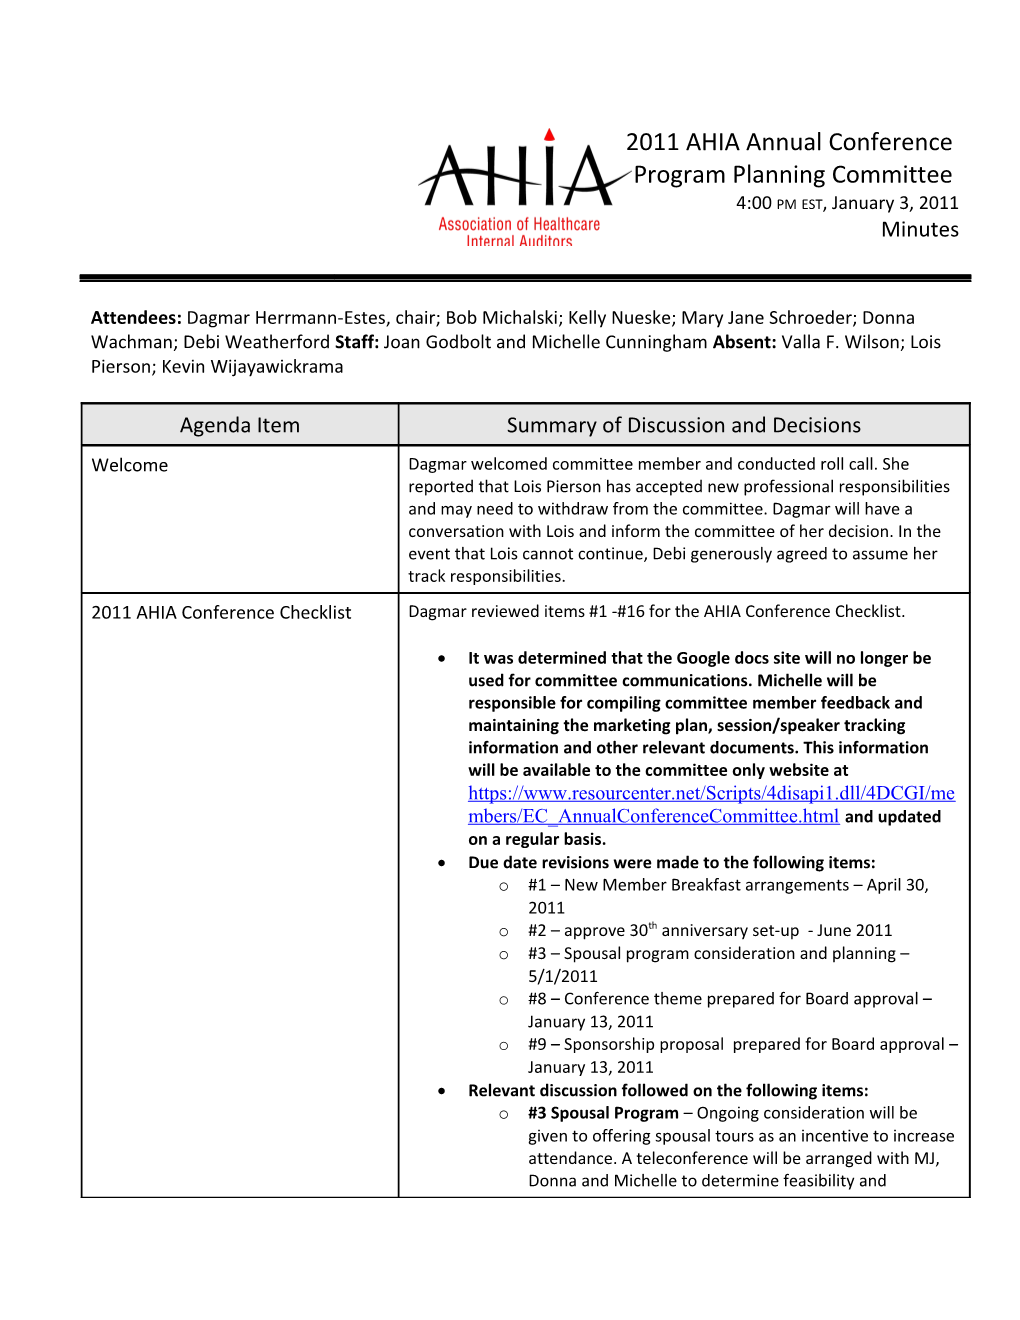 AHIA Committee Minutes